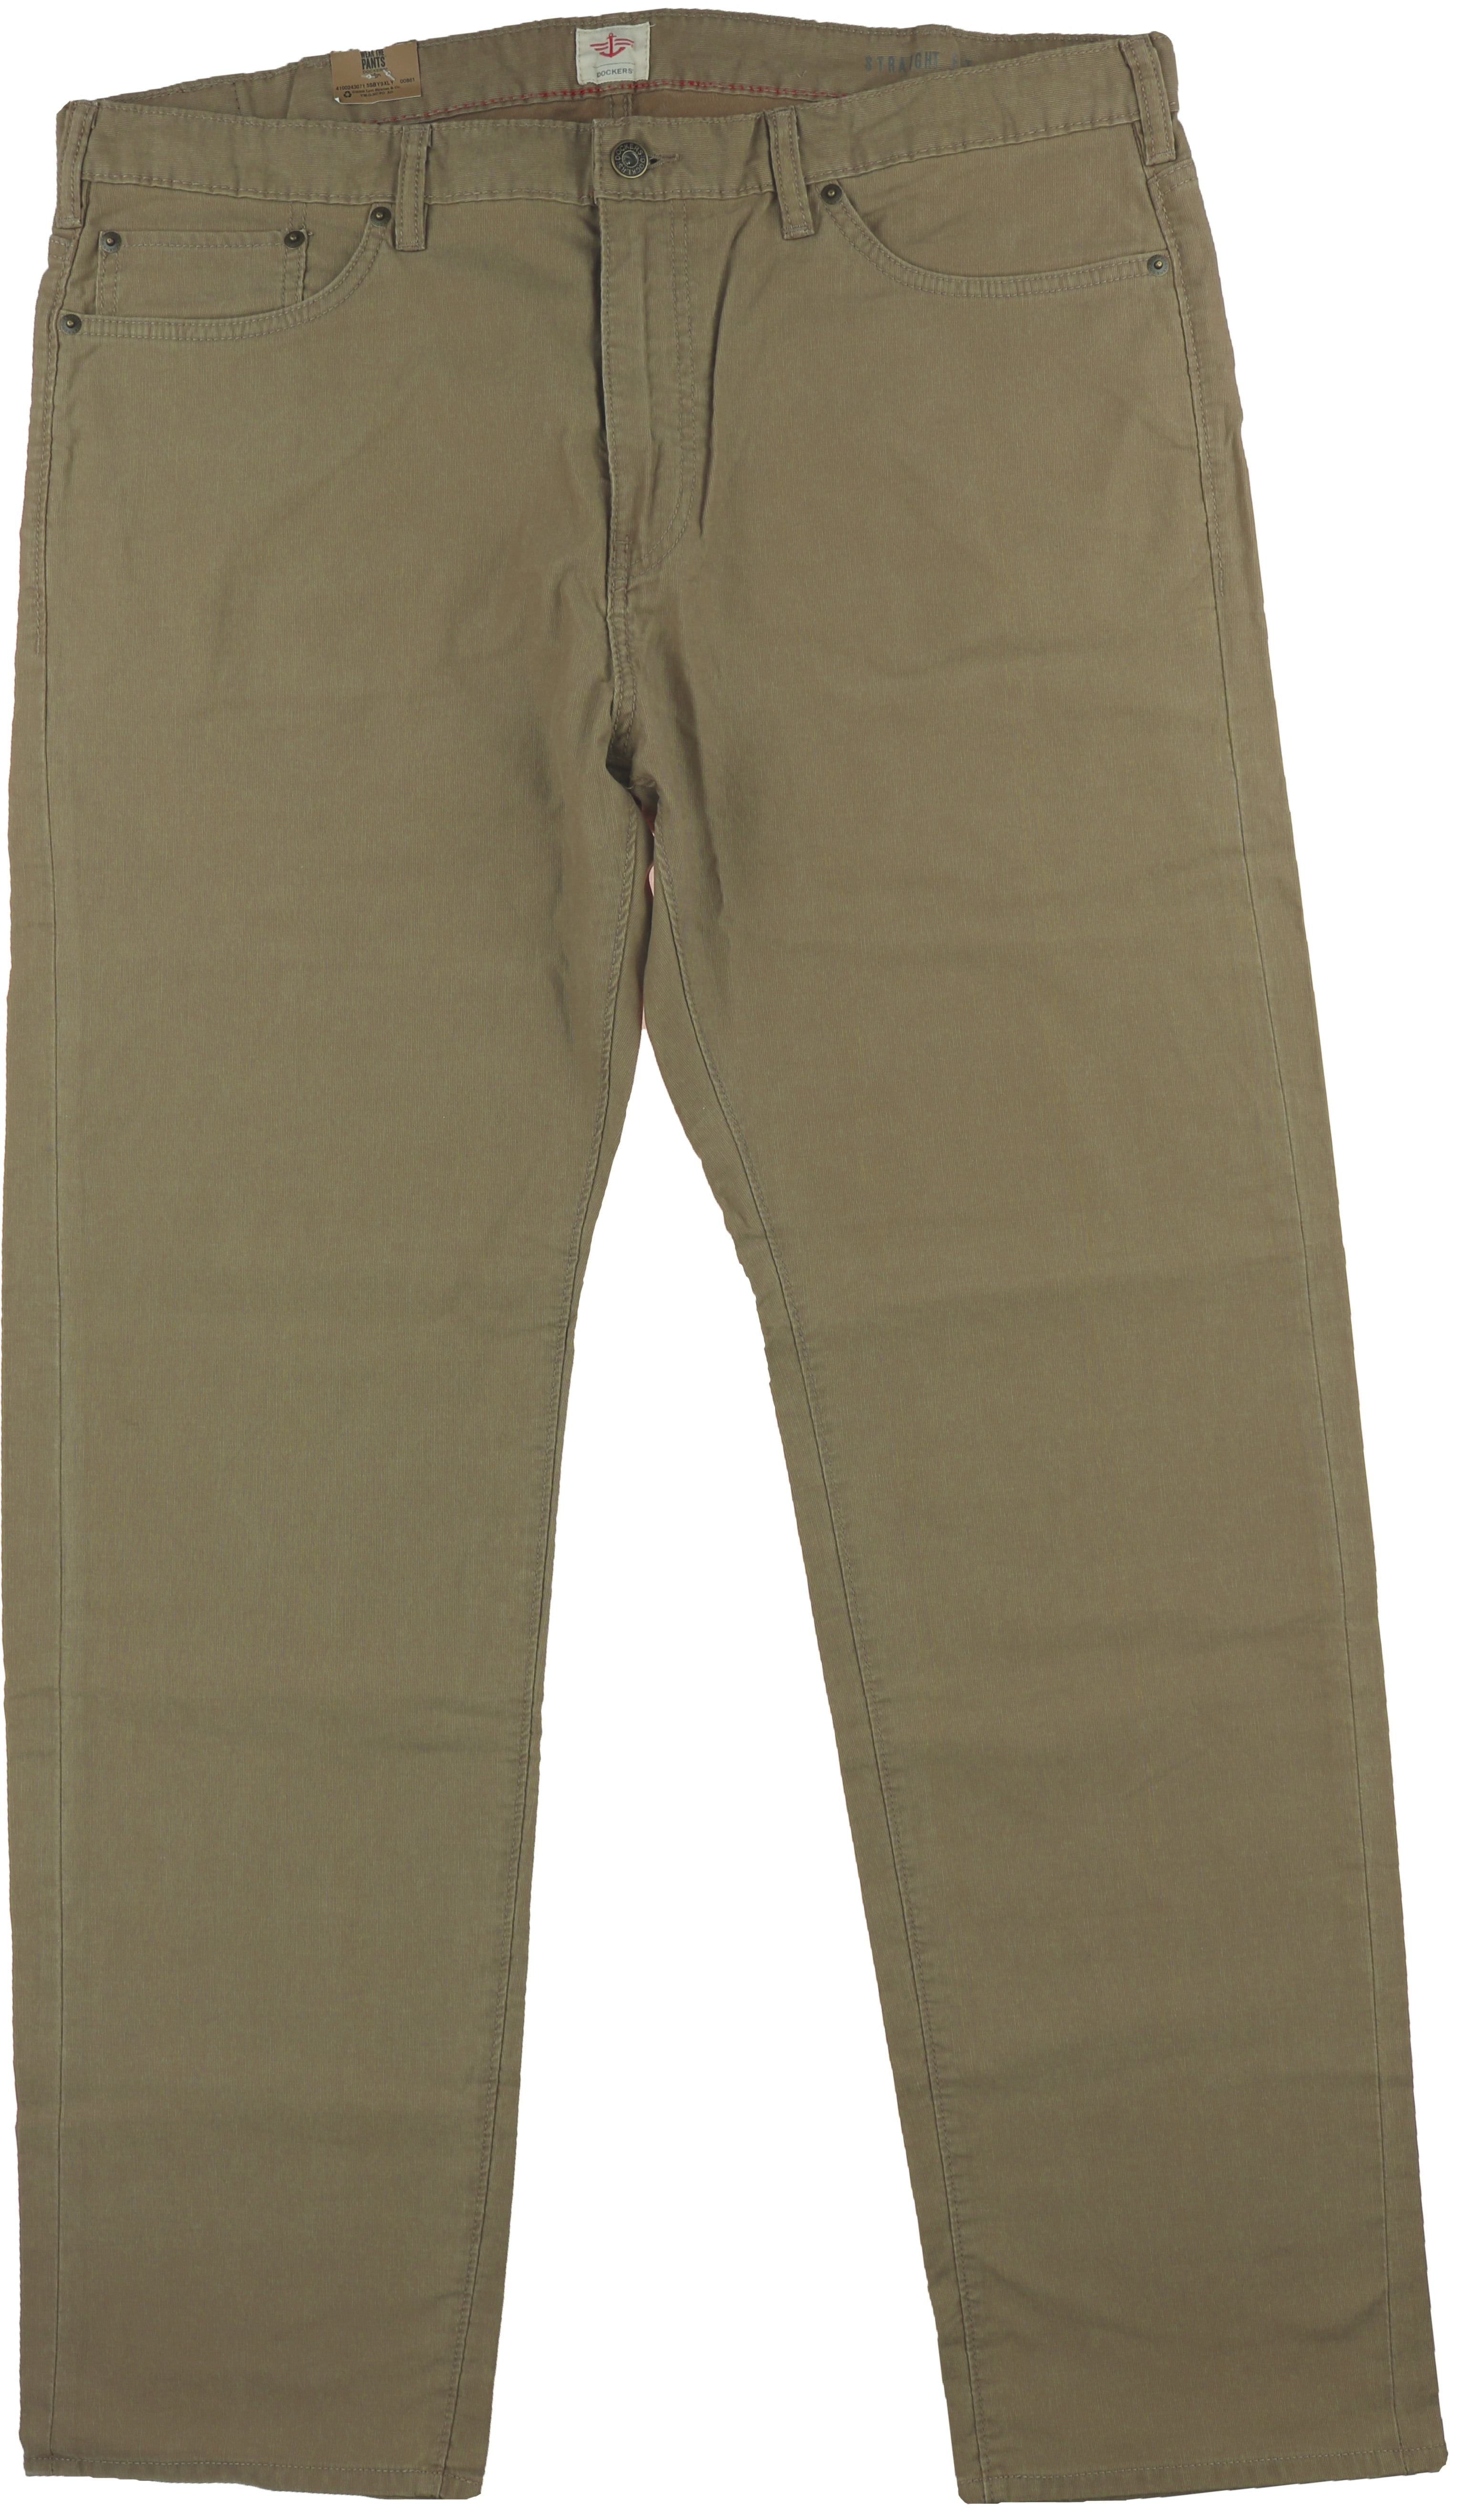 Wijden vermijden na school Dockers Pacific Collection Mens 5-Pocket Straight Fit Pants (Khaki, 36X32)  - Walmart.com